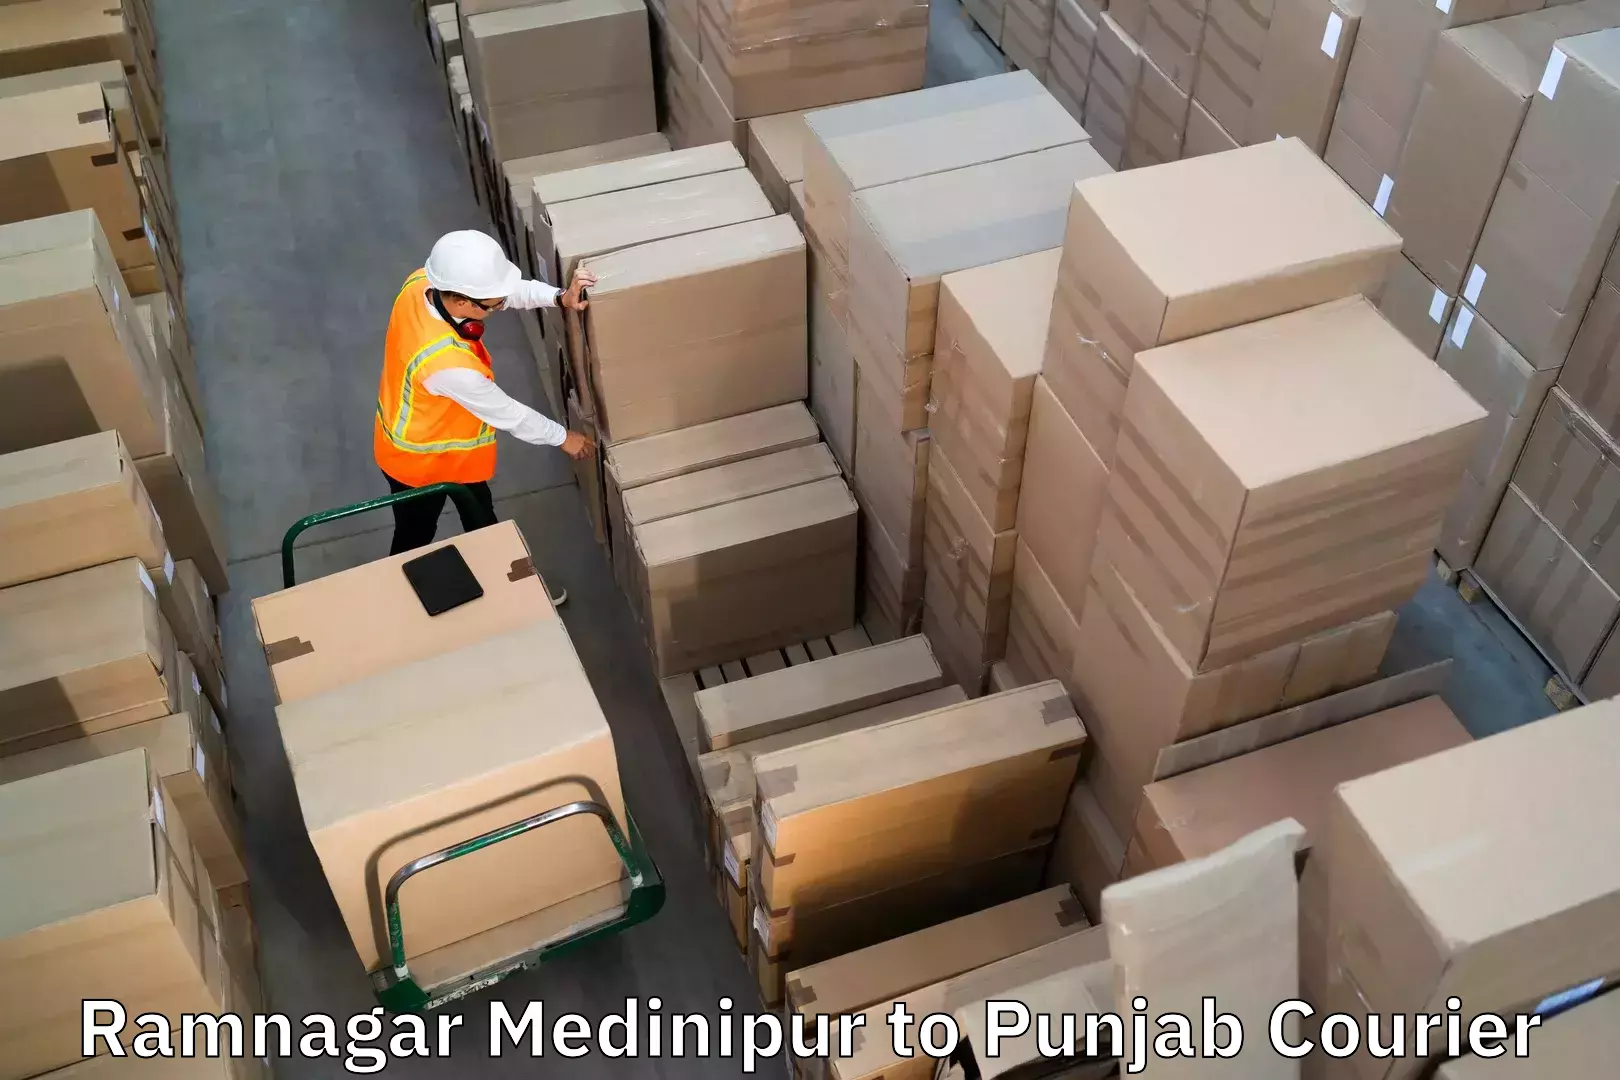 Urgent luggage shipment in Ramnagar Medinipur to Ropar